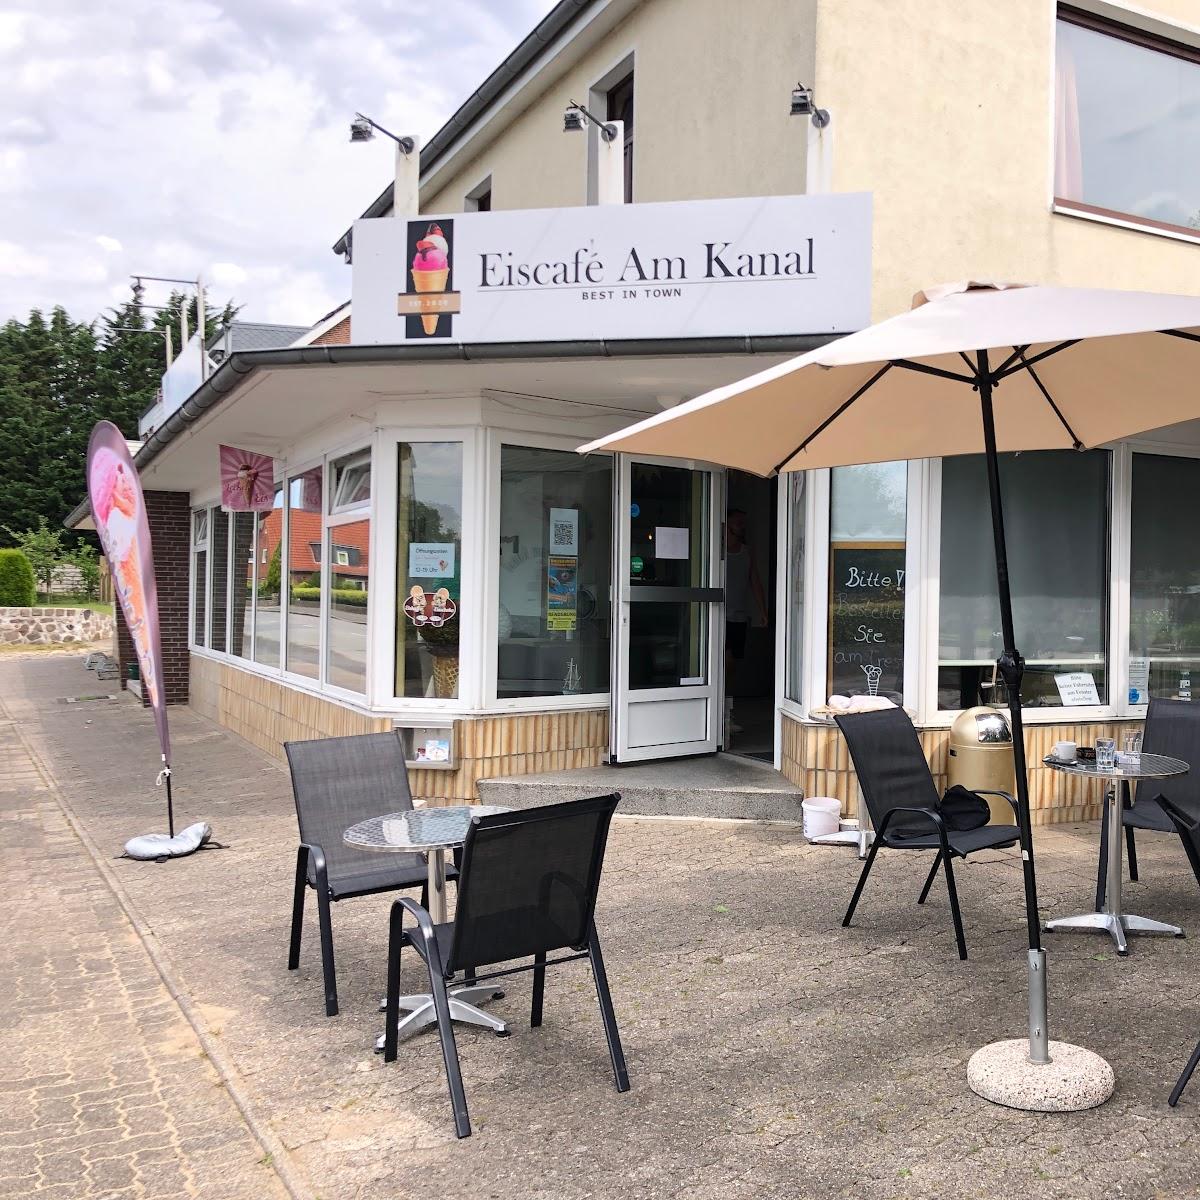 Restaurant "Eiscafé am Kanal" in Schacht-Audorf